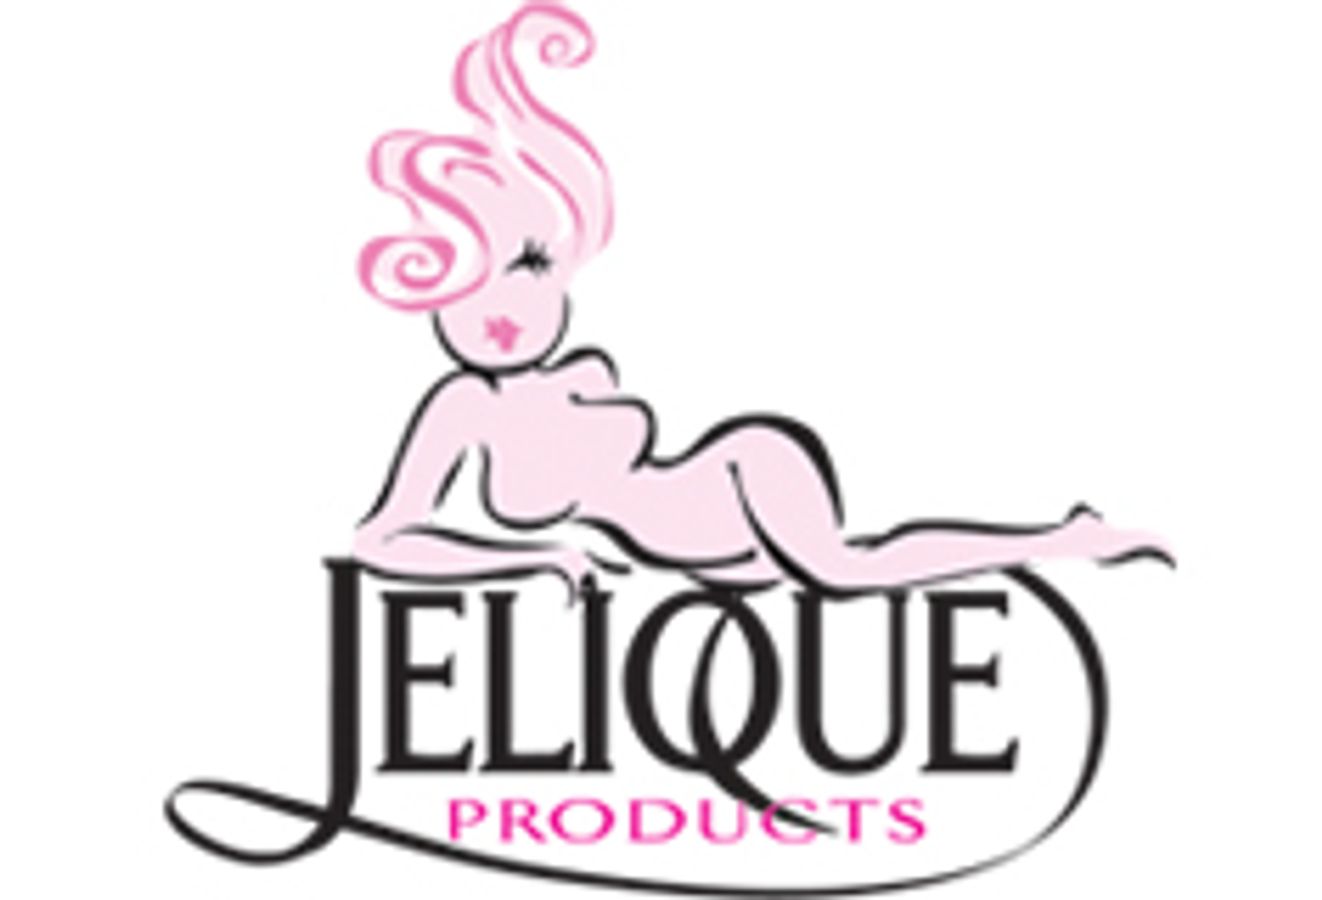 Jelique Products Inc.